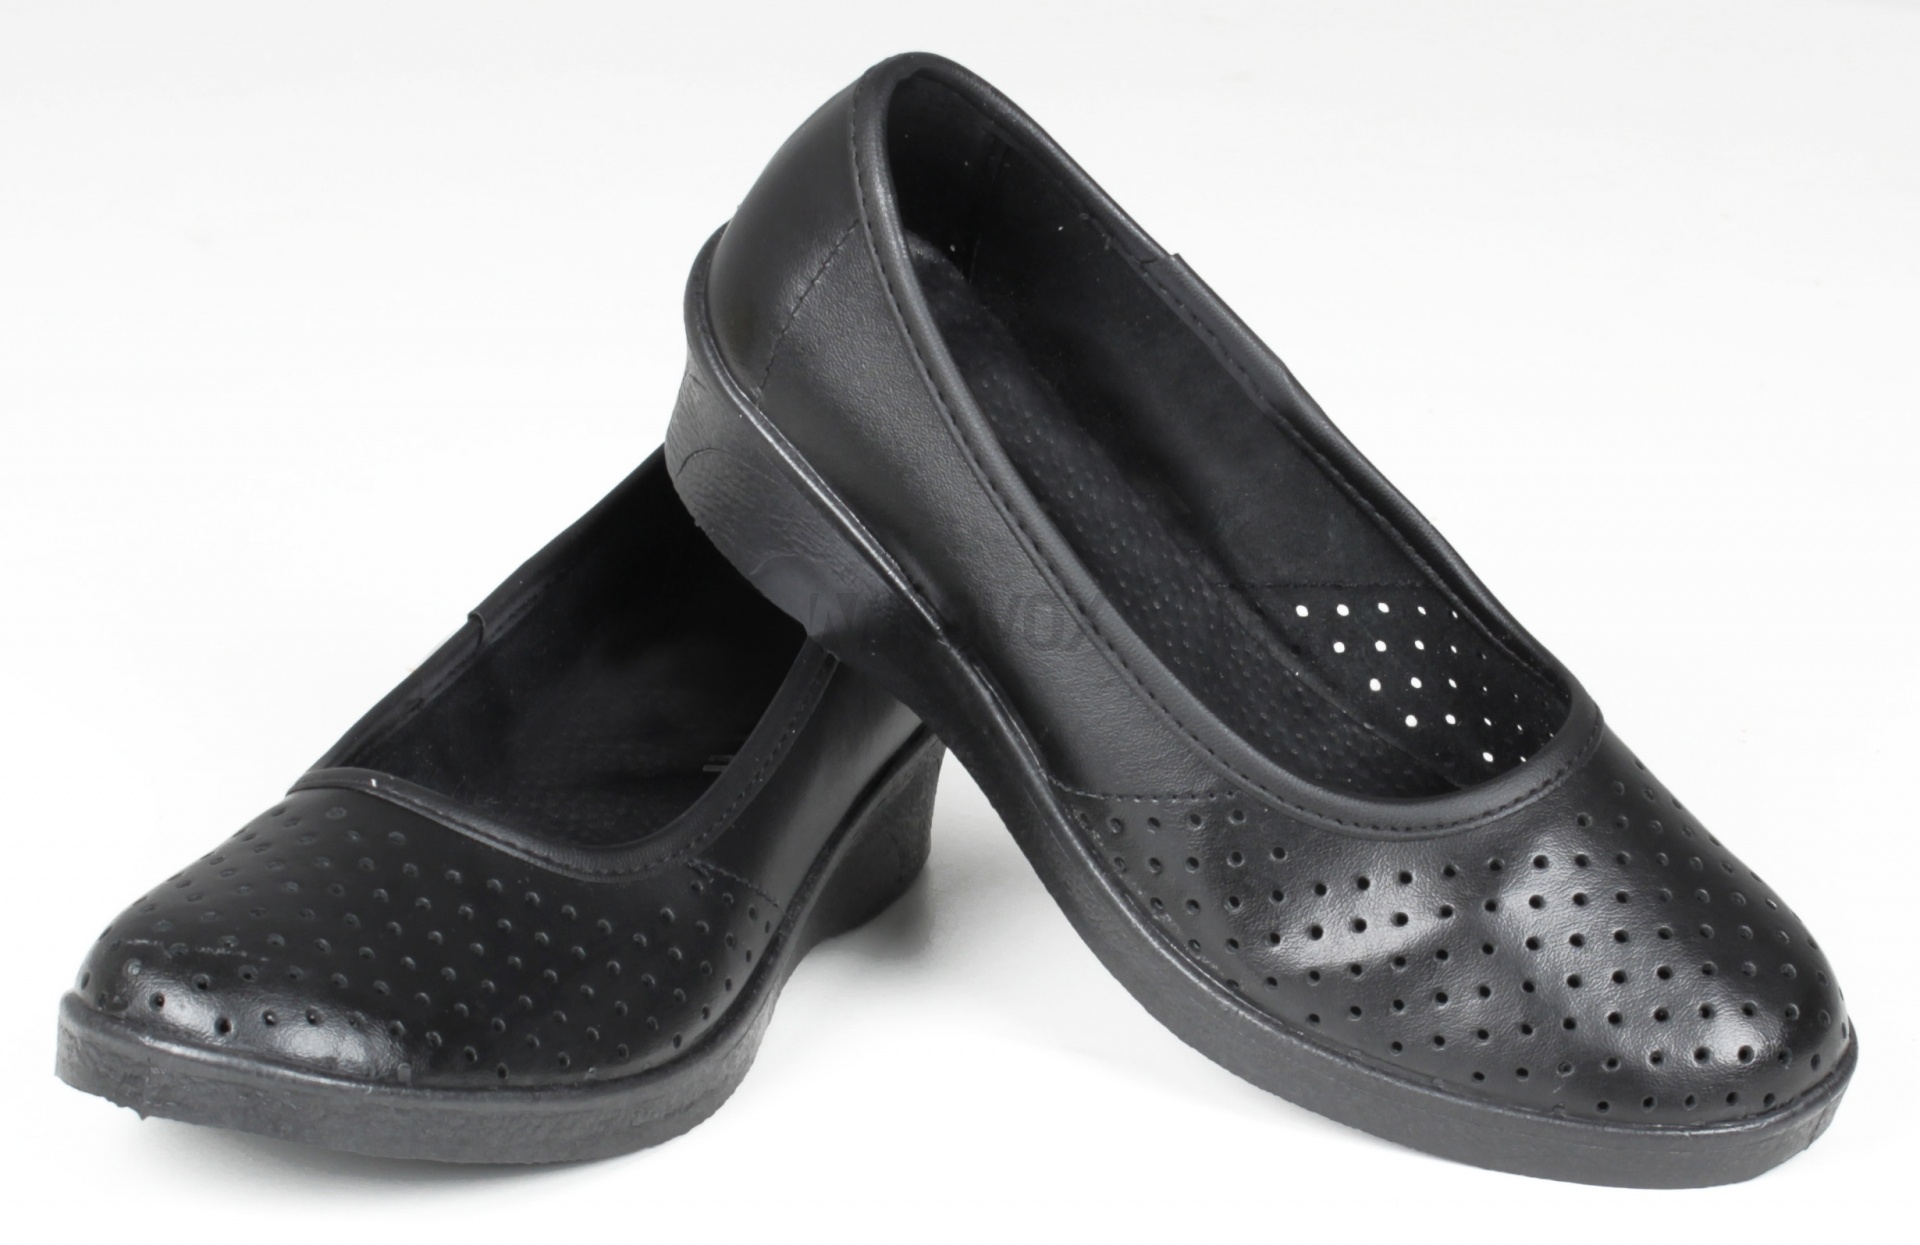 Туфли женские нат. кожа Эмануэла ПВХ ALMI (арт. 6813-00101) черный